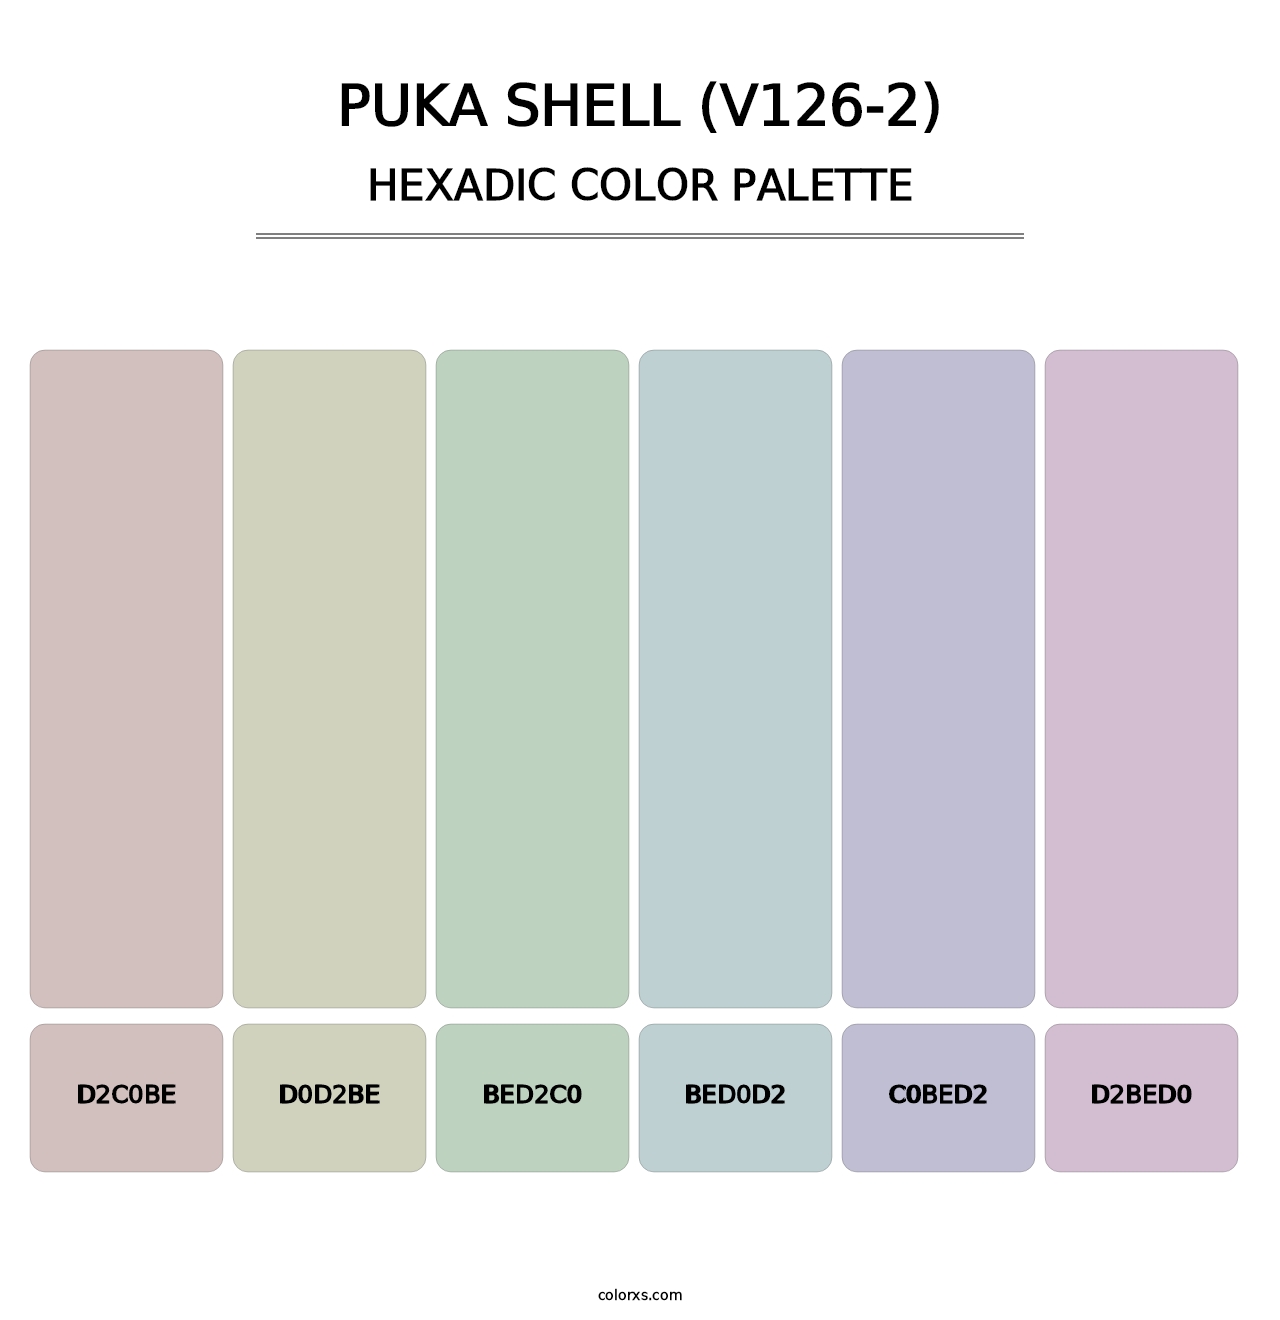 Puka Shell (V126-2) - Hexadic Color Palette